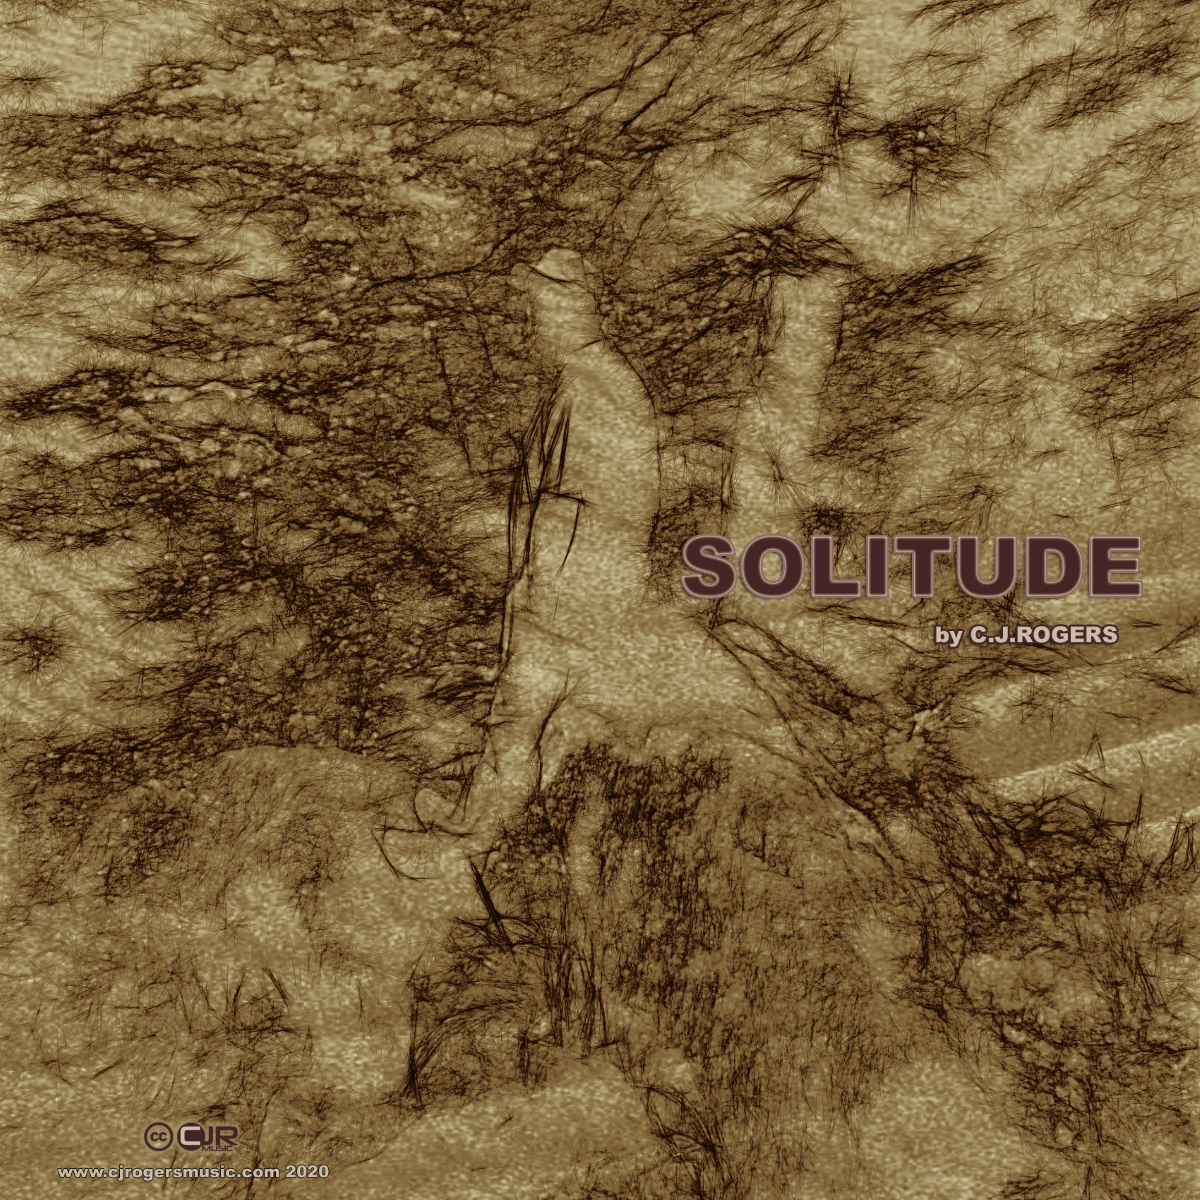 Solitude - Fullsize Cover Art